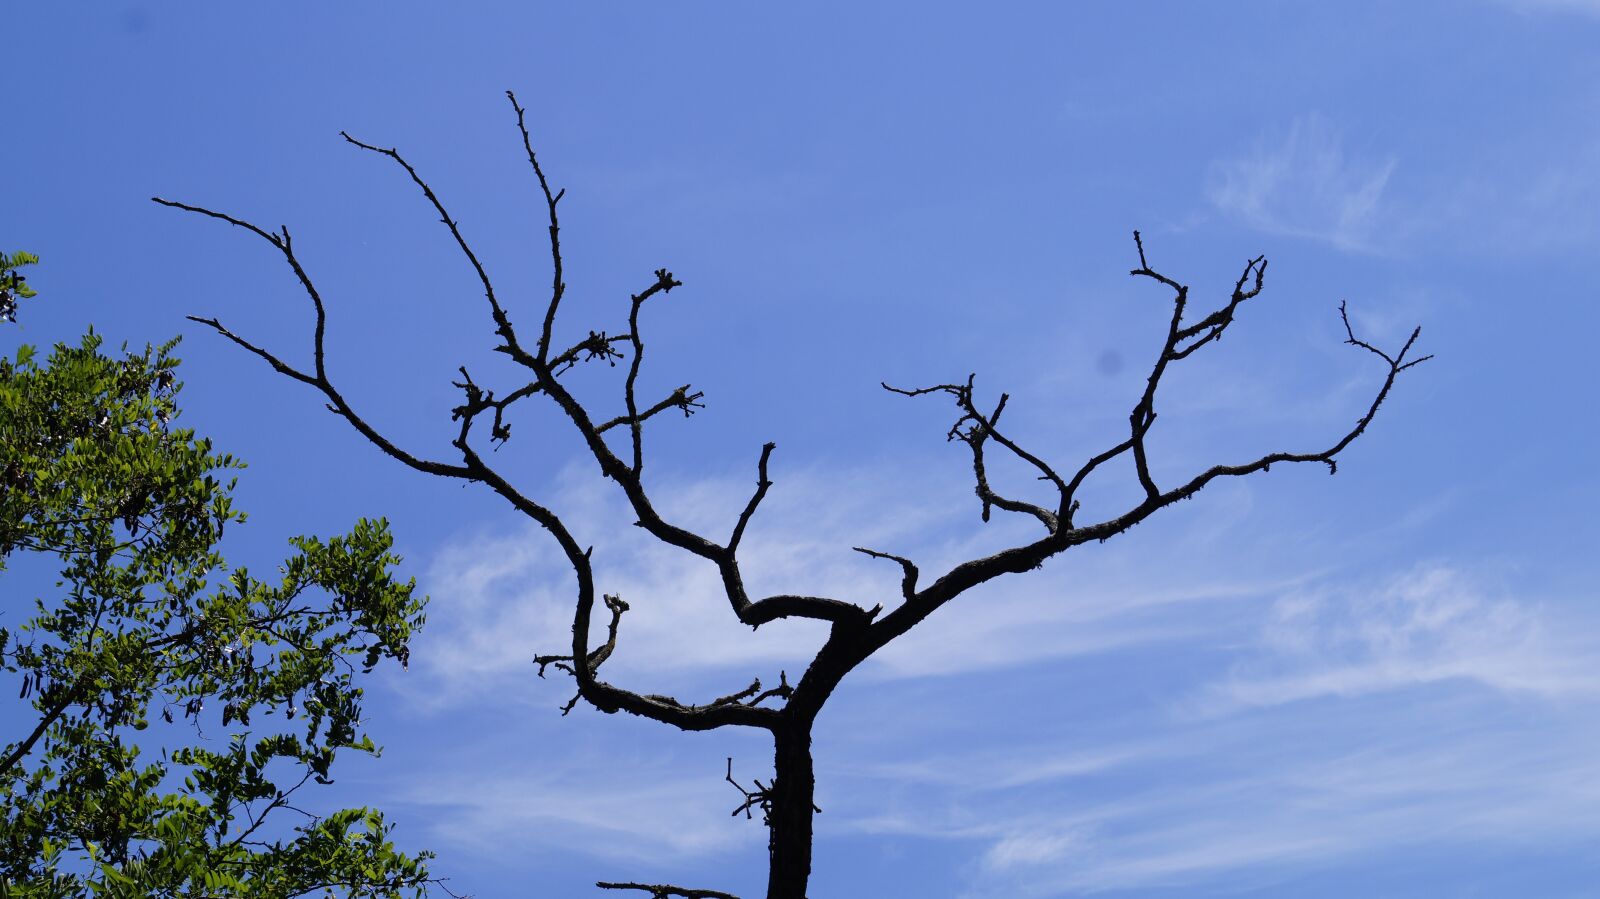 Sony SLT-A58 sample photo. Tree, sky, blue photography